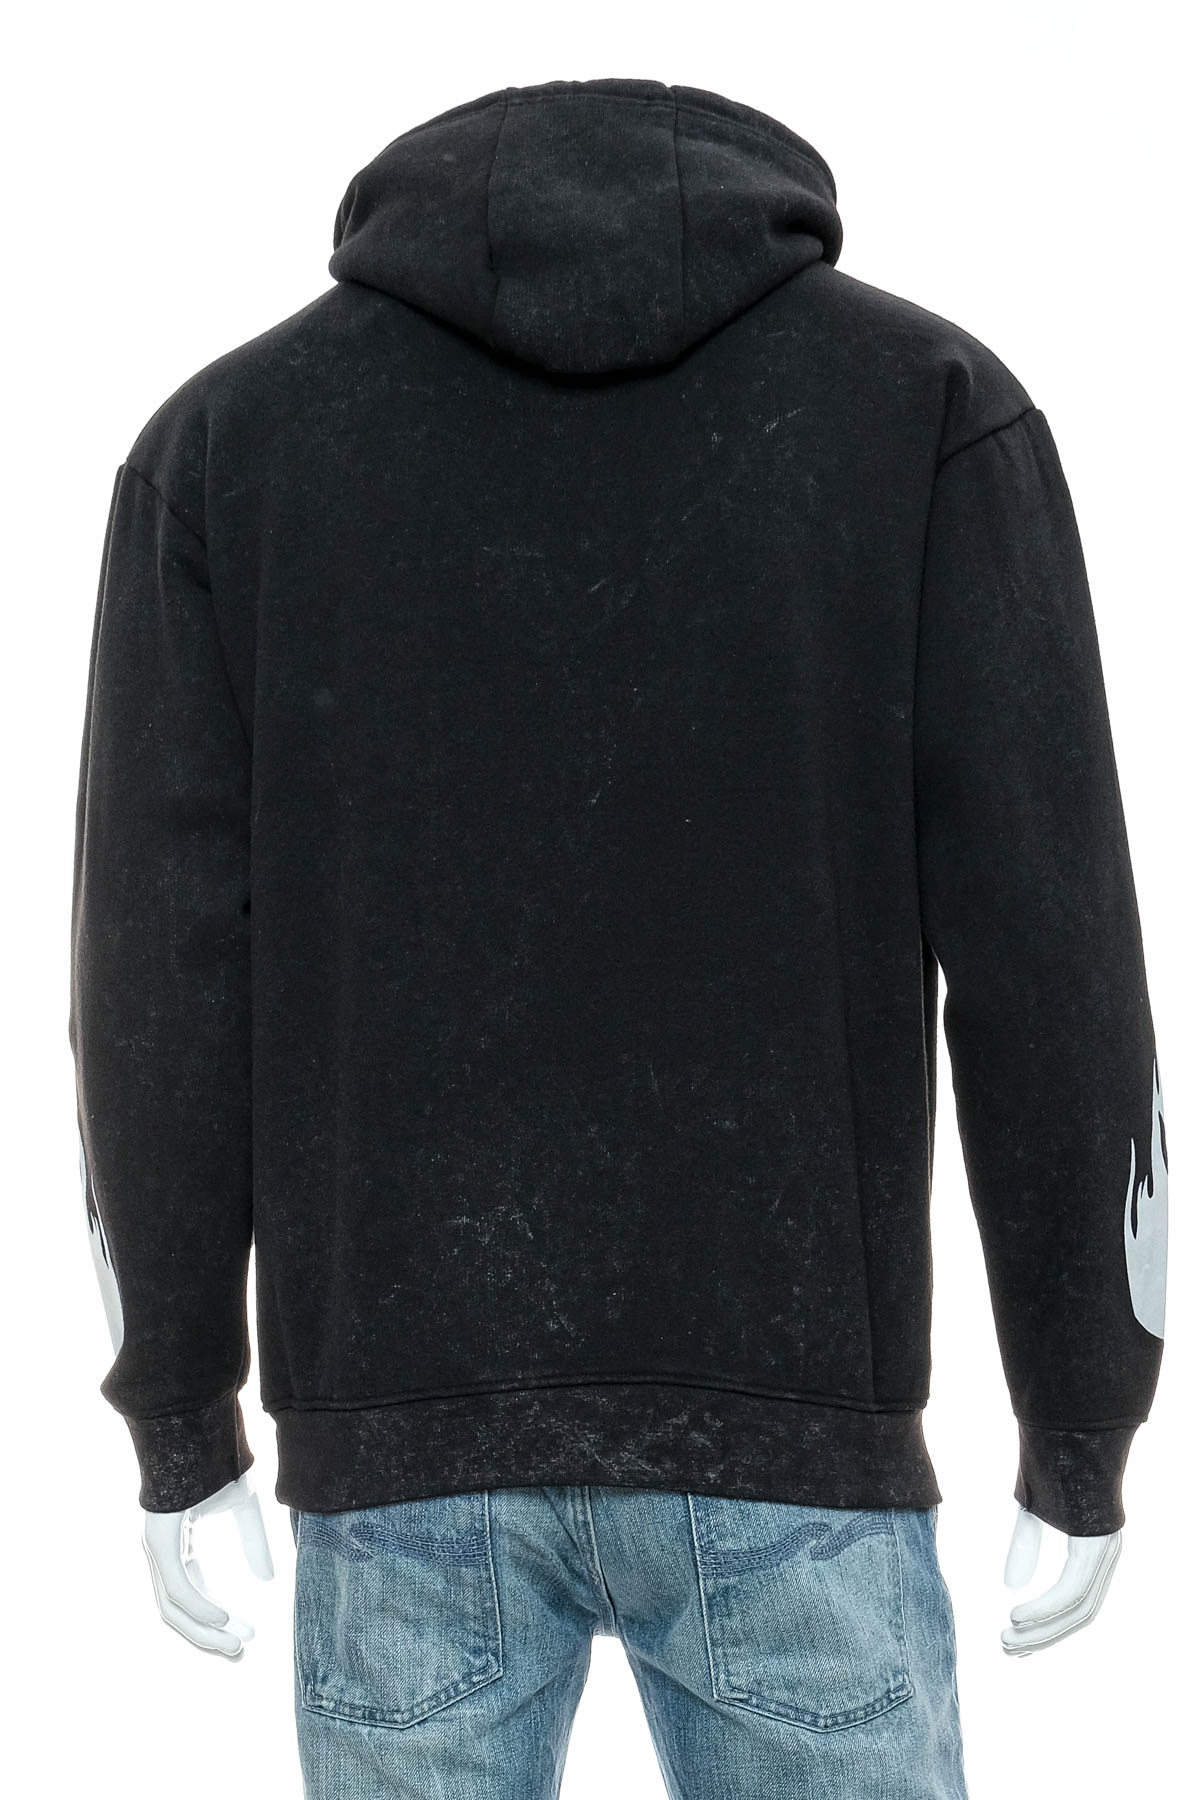 Men's sweatshirt - Nominal - 1